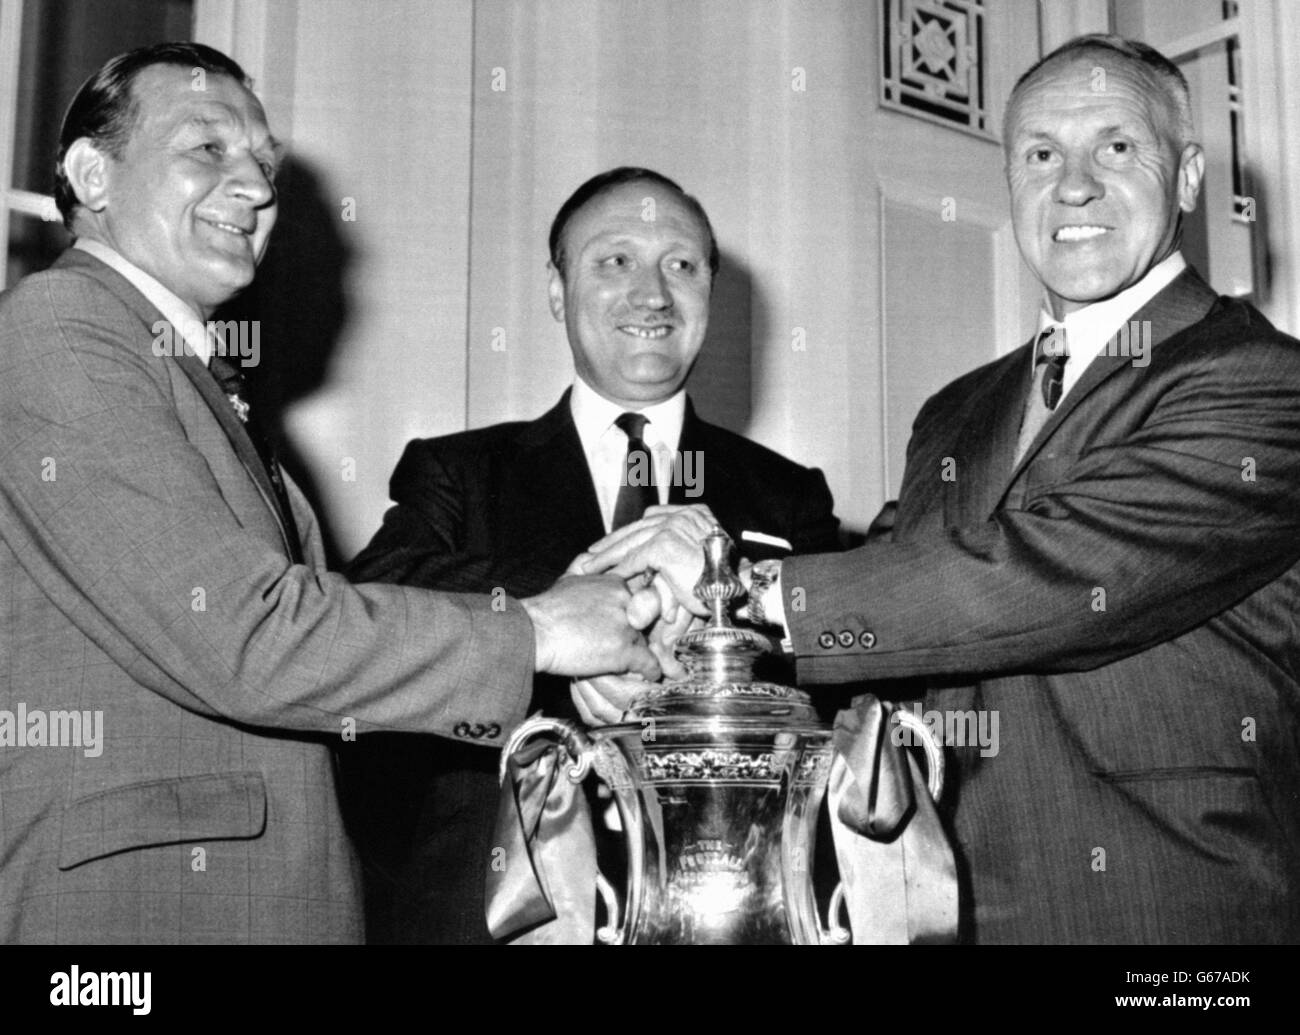 Überreicht den FA Cup, da der neue Manager von Liverpool, Bobby Paisley (links), die guten Wünsche des Clubvorsitzenden John Smith (Mitte) und des scheidenden Managers Bill Shankly erhält, nachdem seine Ernennung auf der Mitgliederversammlung des Clubs angekündigt worden war. Paisley, eine ehemalige Liverpooler Flügelhälfte, ist seit drei Jahren Shankleys Assistent. Stockfoto